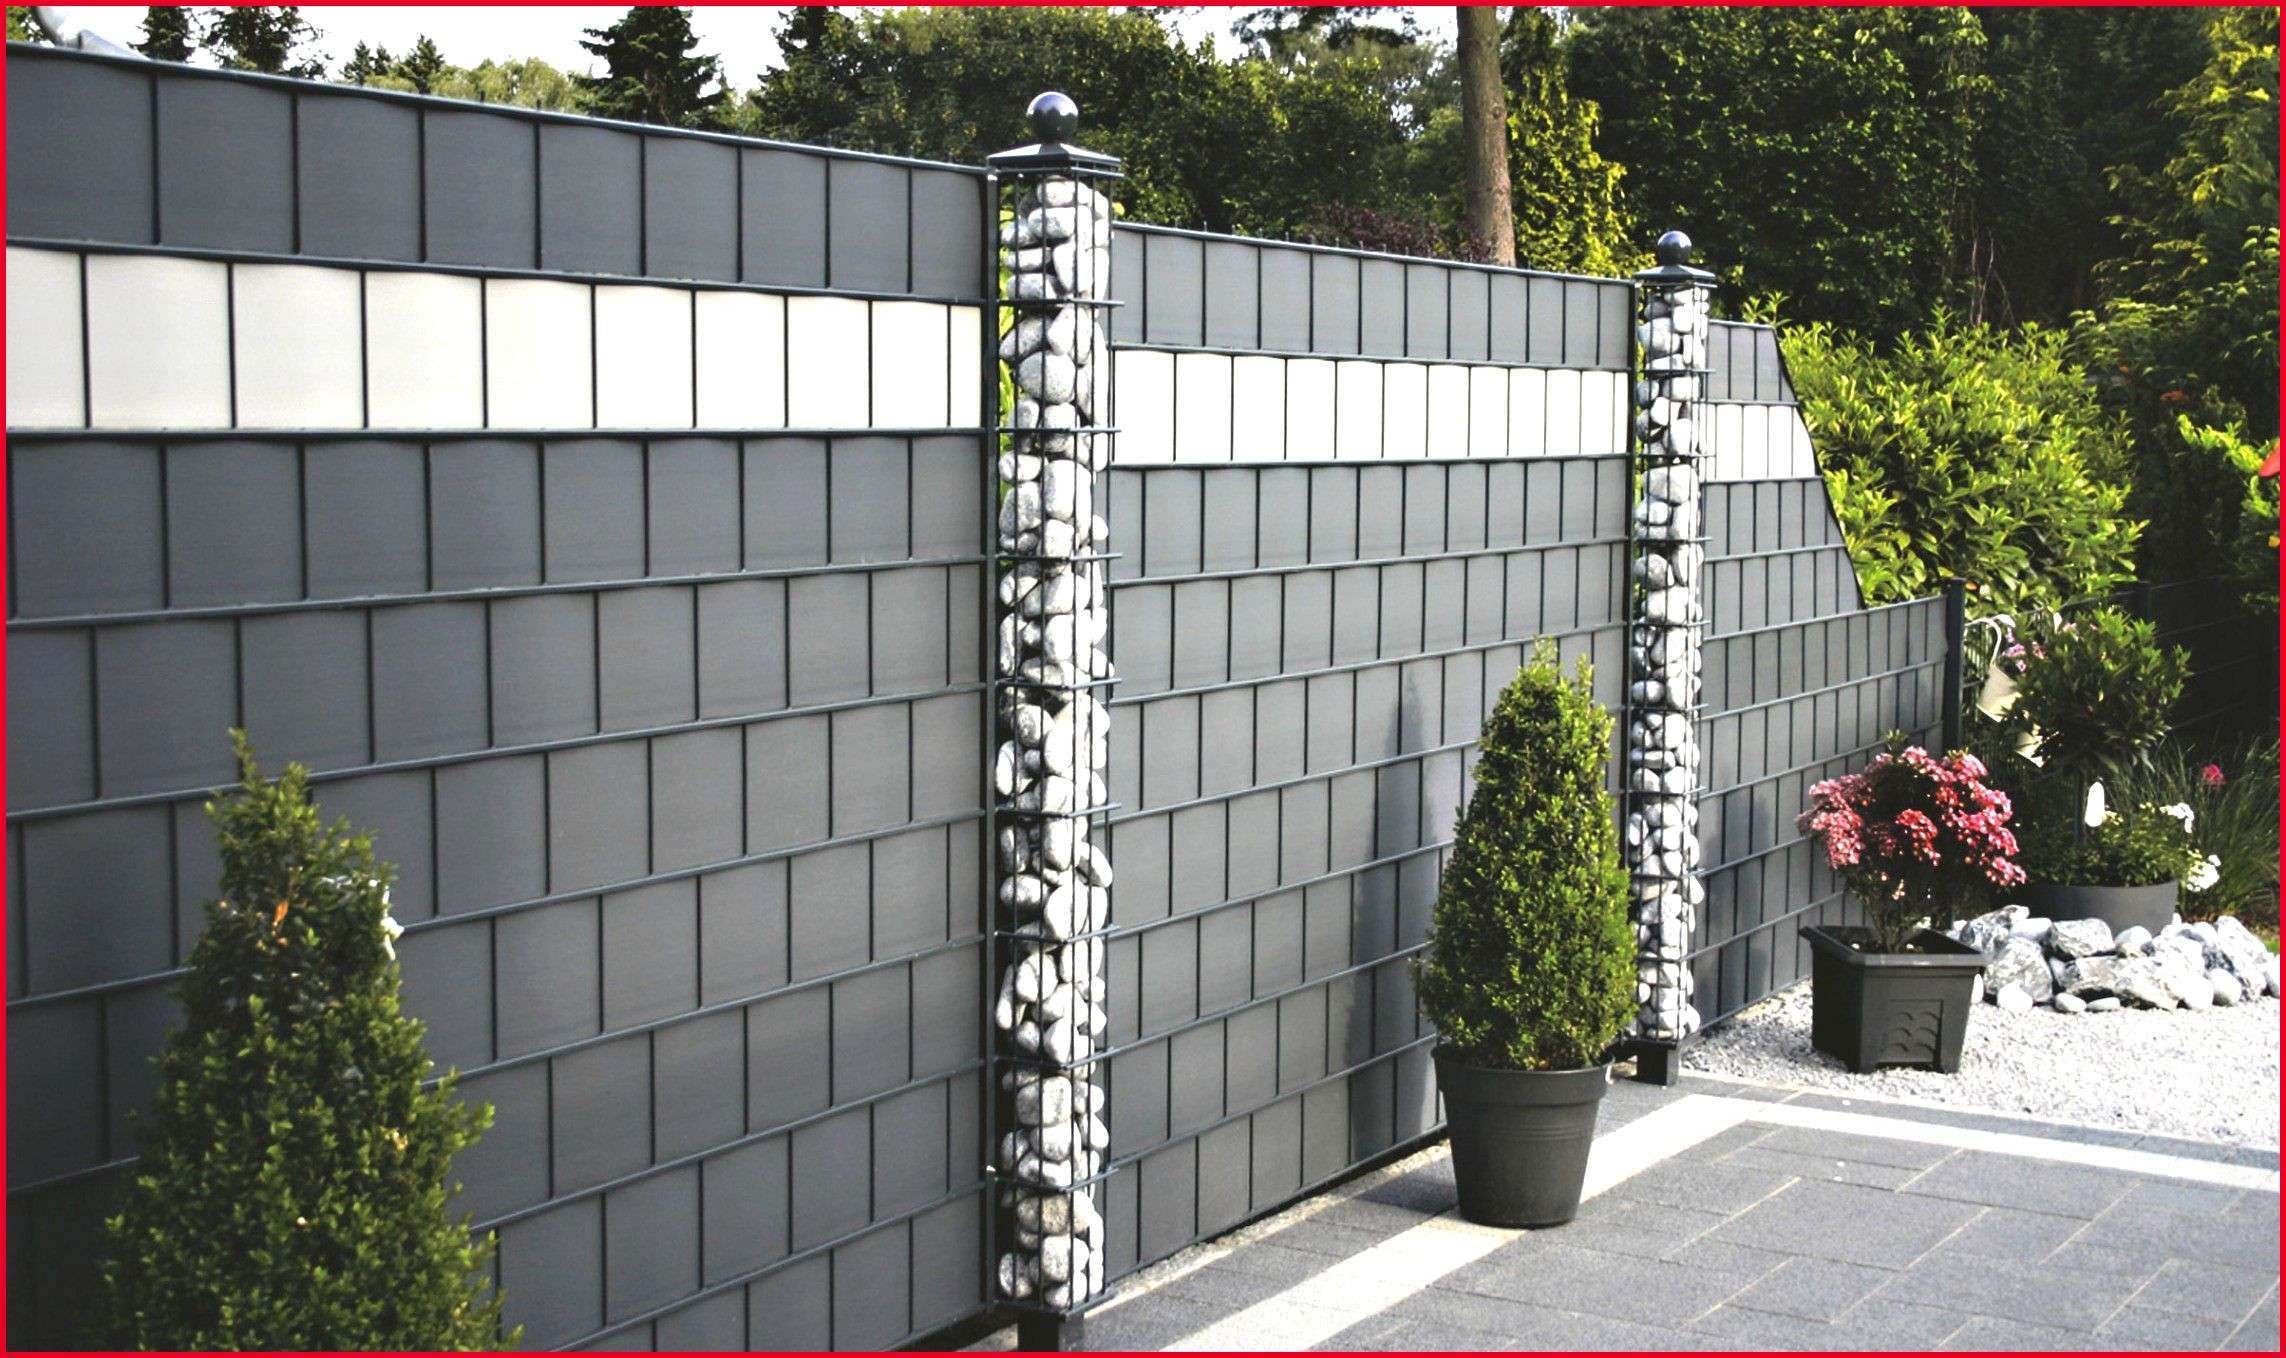 Terrassengestaltung Ideen Pflanzen Elegant Sichtschutz Stein Beste Zaun Mit Steinen Garten Ideas Zaun